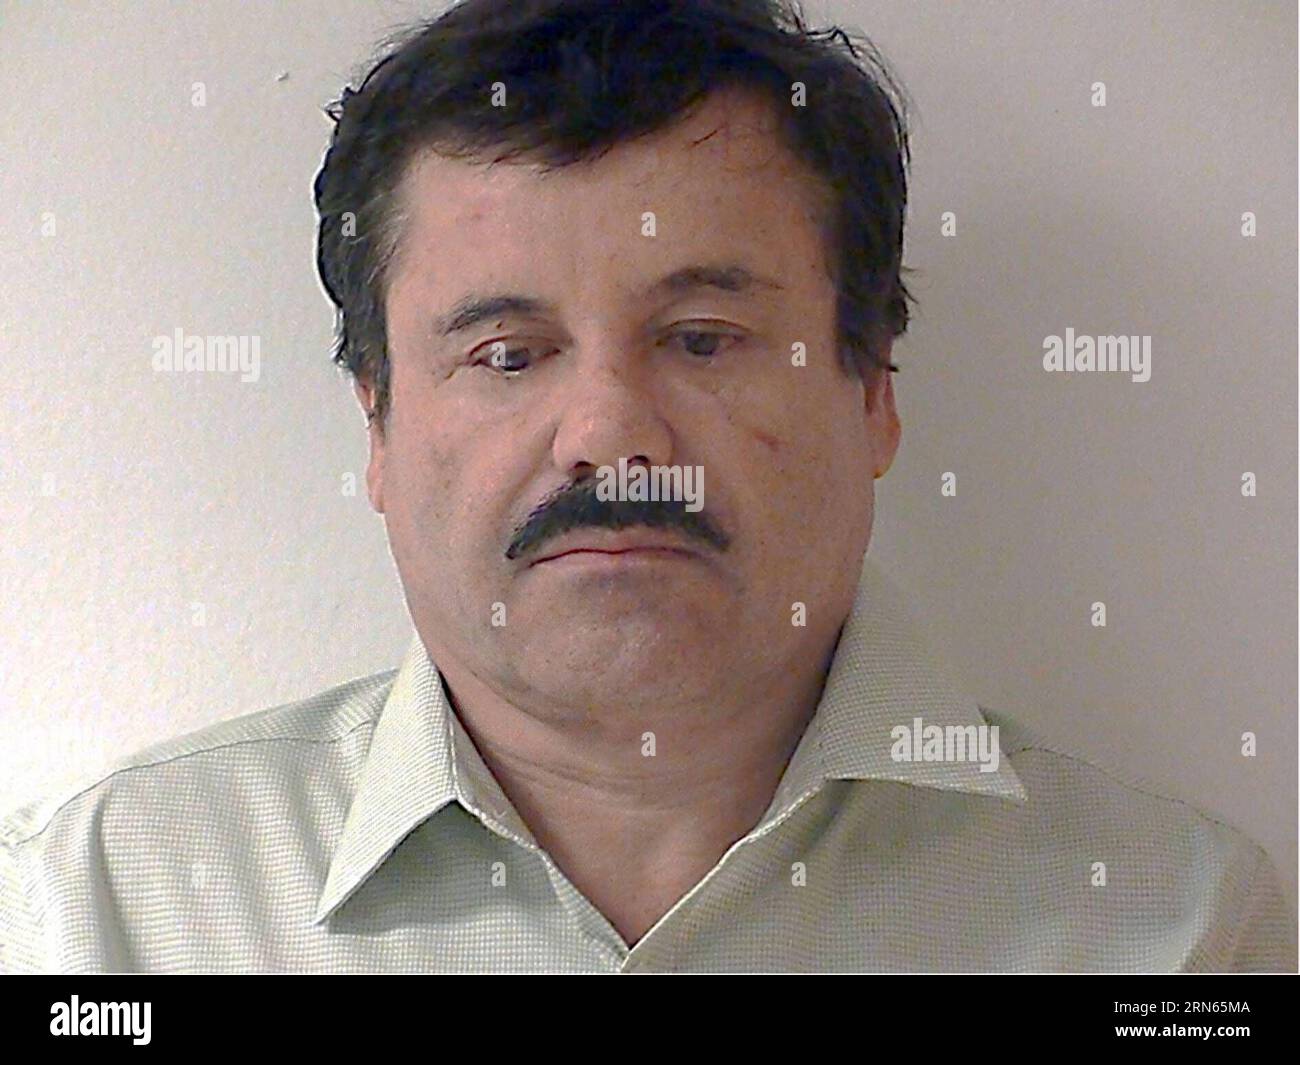 MEXICO, image fournie par le procureur général de la République du Mexique le 25 février 2014 montre le roi du cartel de la drogue mexicain Joaquin El Chapo Guzma identifié à Mexico, au Mexique. Guzman, chef du cartel de la drogue de Sinaloa, a disparu samedi soir de la prison de haute sécurité Altiplano à l'extérieur de Mexico, selon la Commission de sécurité nationale. (ZJY) MEXIQUE-CARTEL-GUZMAN-ESCAPE-FILE GENERALXATTORNEYXOFXTHEXREP... PUBLICATIONxNOTxINxCHN Mexico City image fournie par le procureur général de la République du Mexique LE 25 2014 février montre Joa, le roi du cartel de la drogue MEXICAIN Banque D'Images